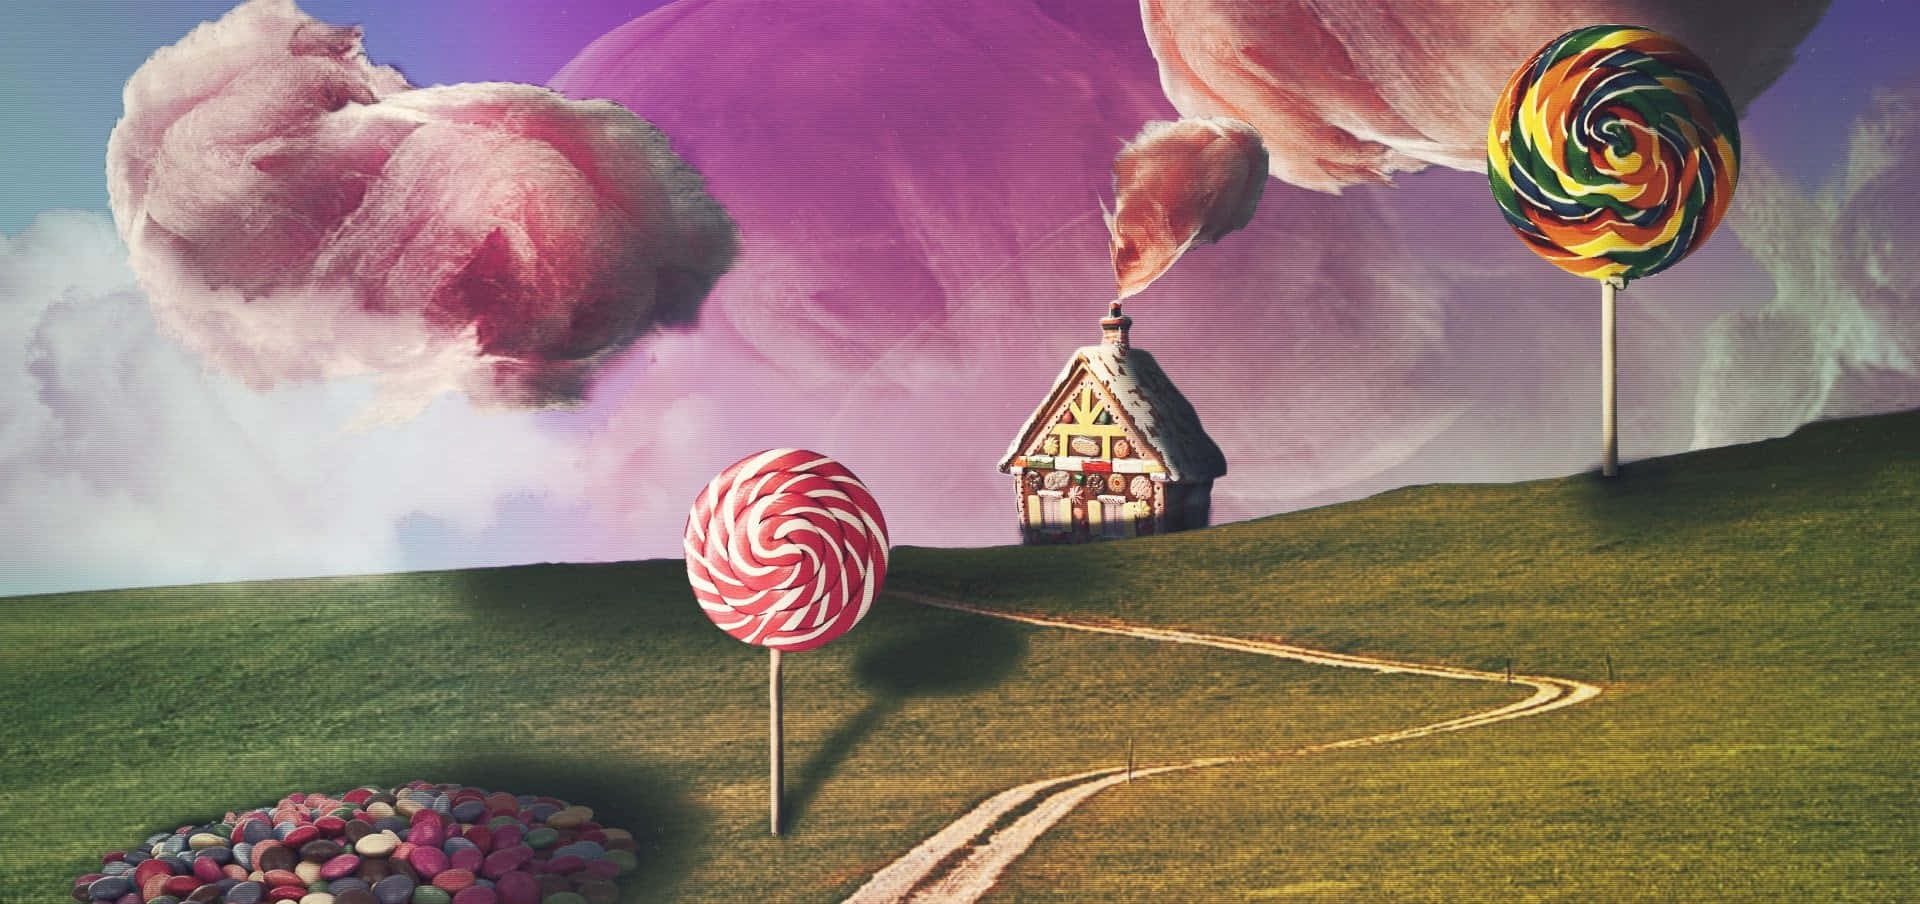 Vamosfazer Uma Viagem Para Candyland Na Tela Do Seu Computador Ou Celular. Papel de Parede